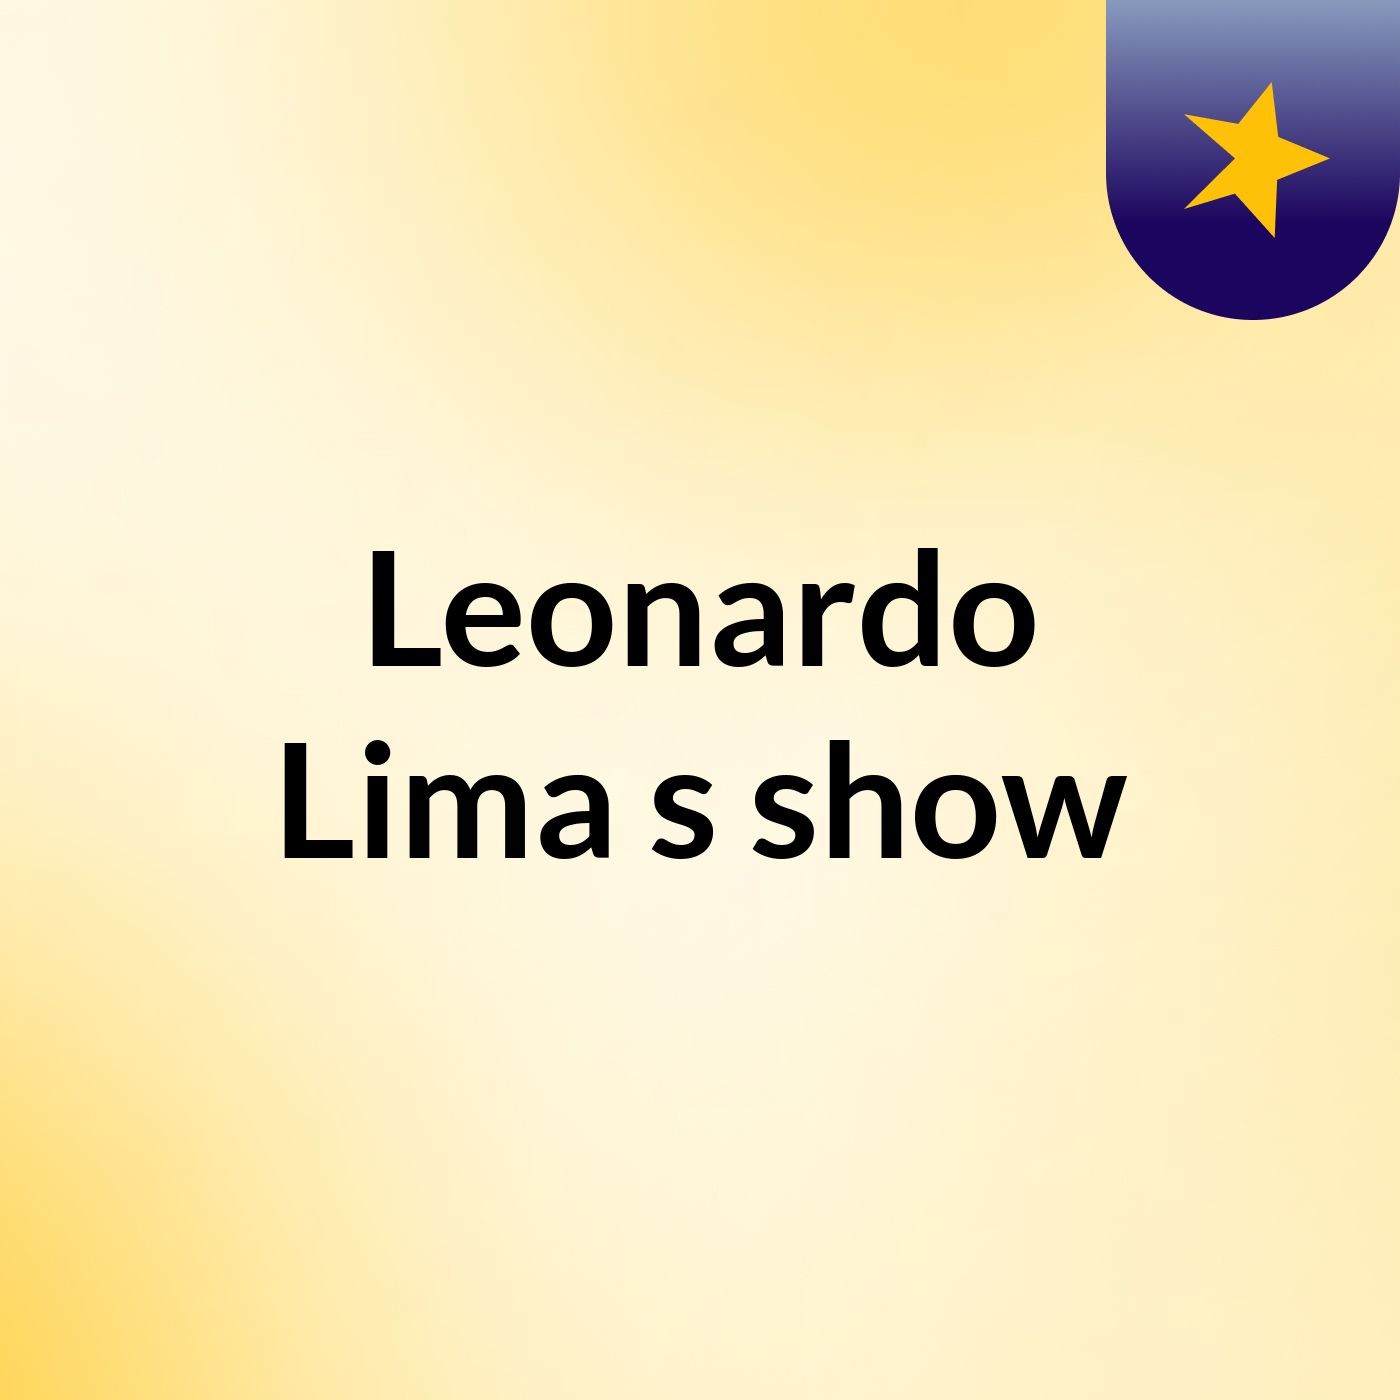 Leonardo Lima's show